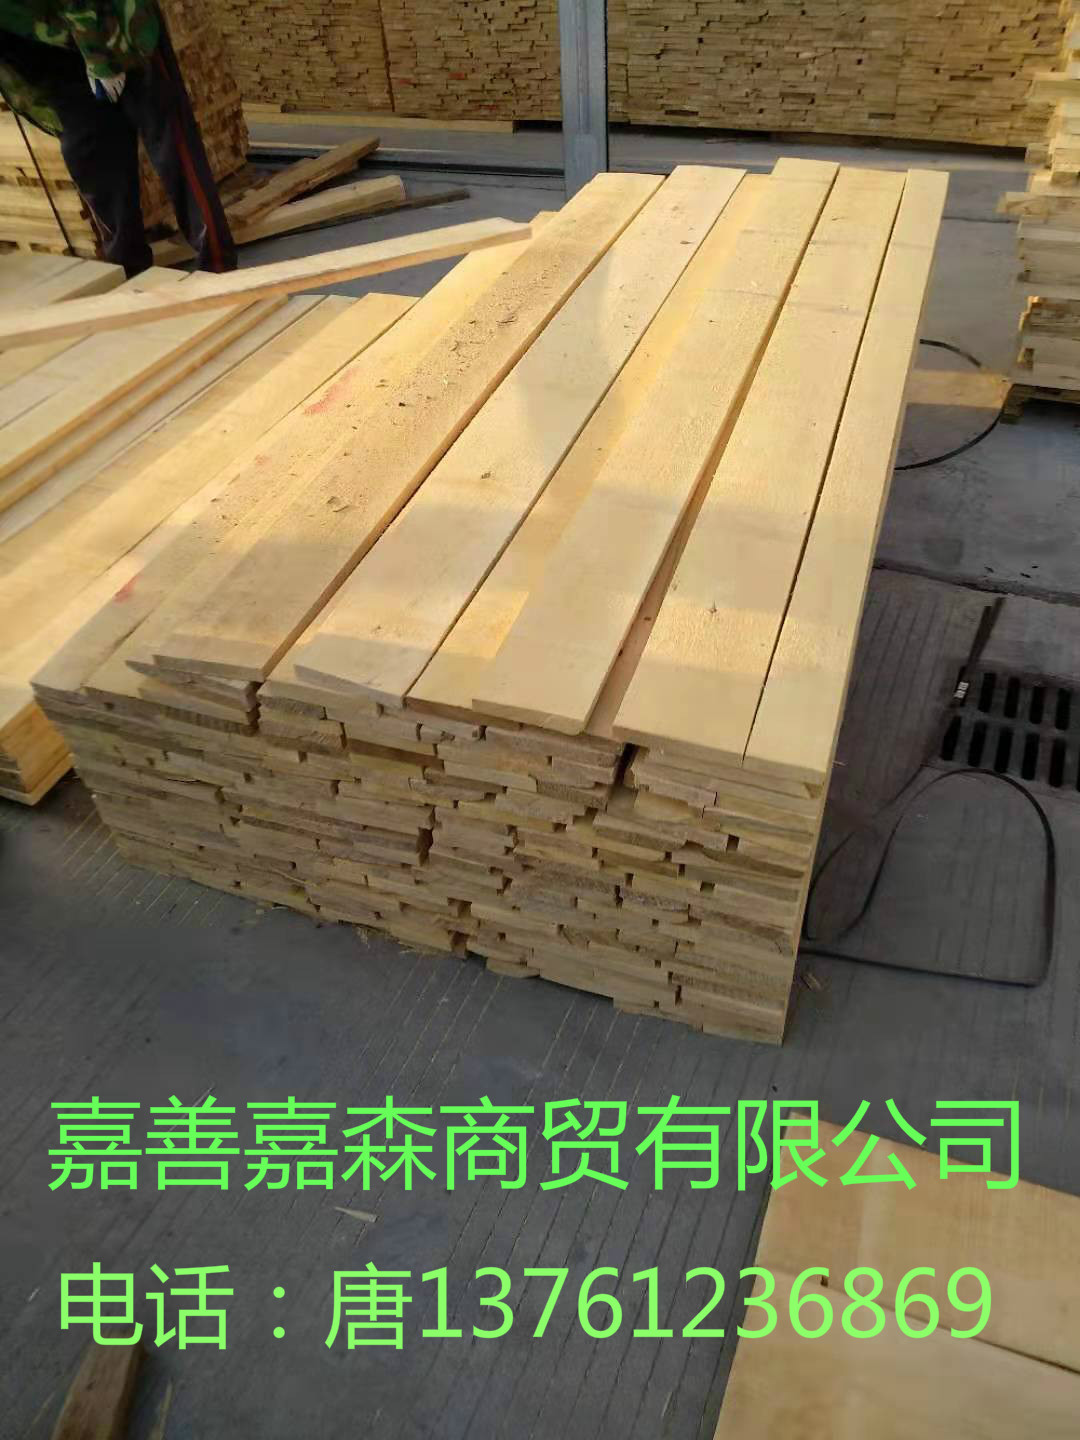 大量供应单面无节桦木实木板材厂家-供应商